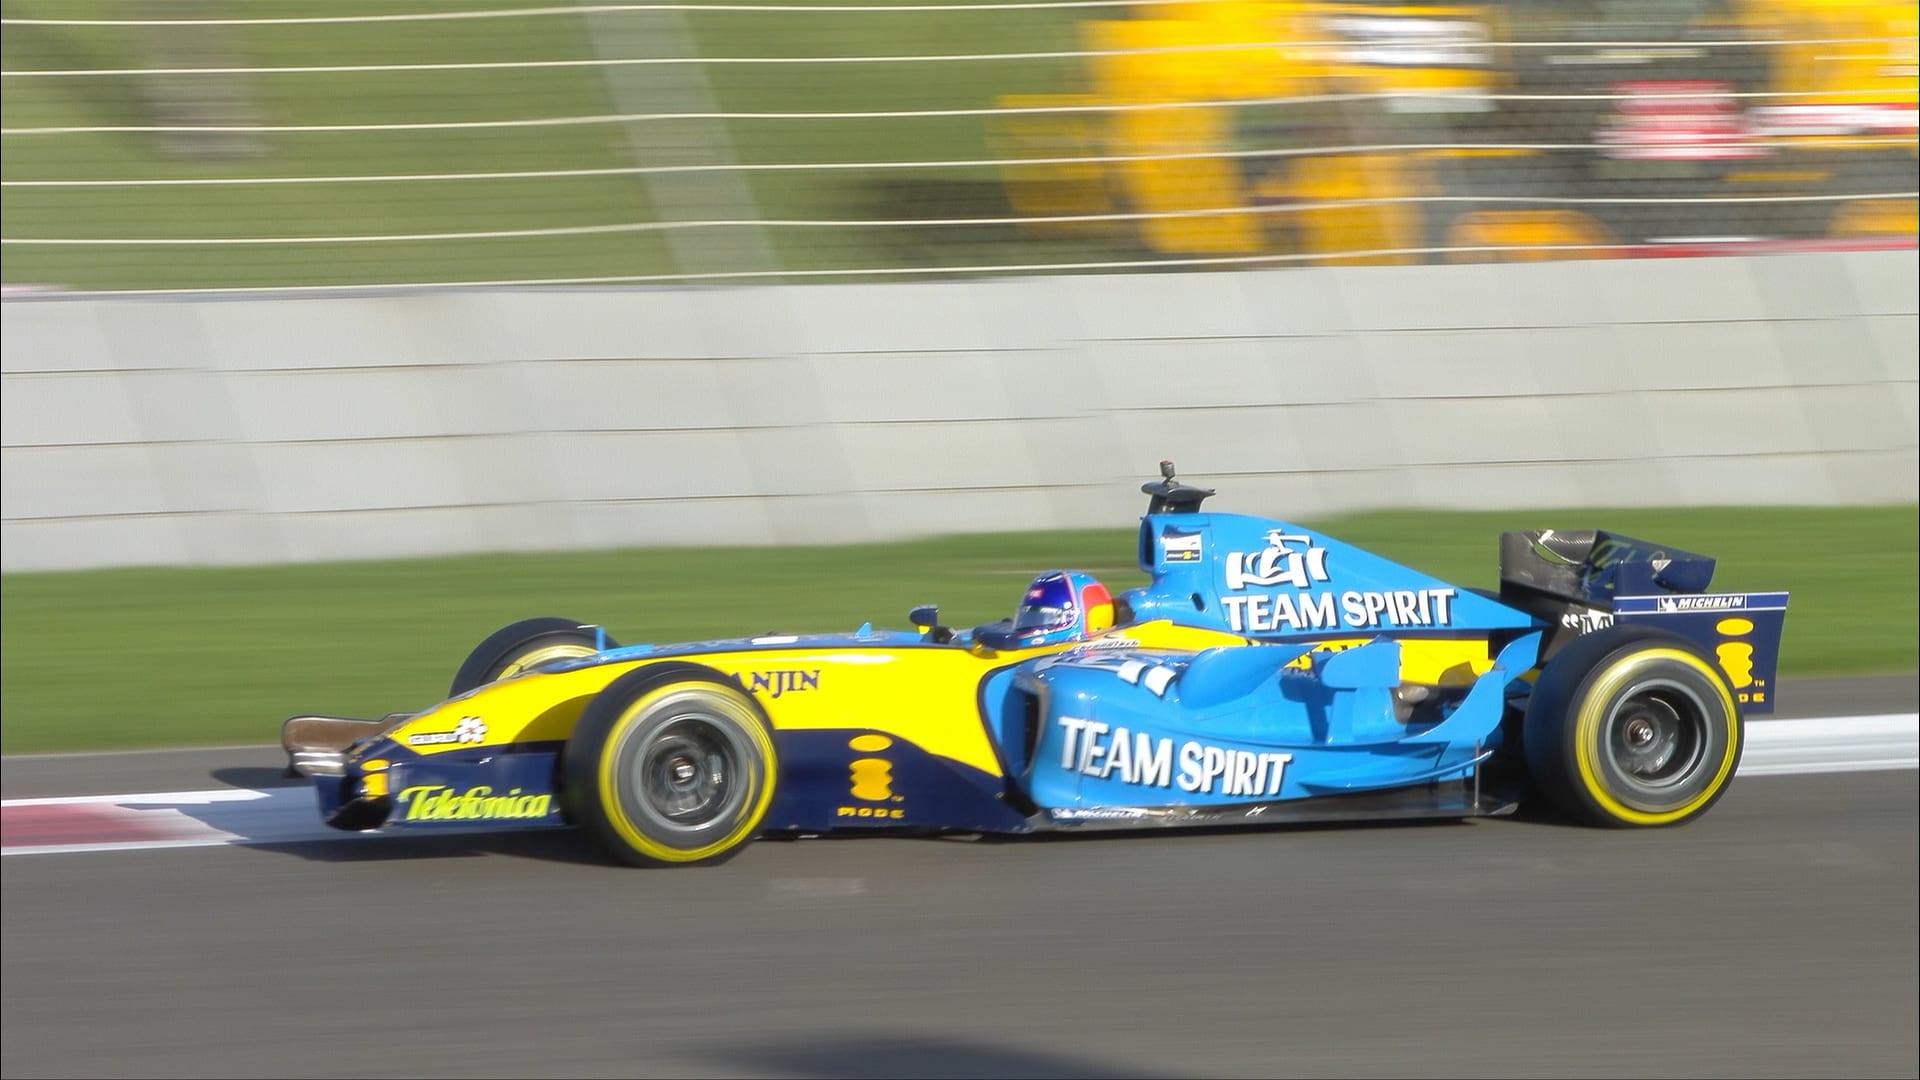 Uitleg krullen schuif MUST-SEE: Fernando Alonso drives his 2005 title-winning Renault R25 at Abu  Dhabi | Formula 1®